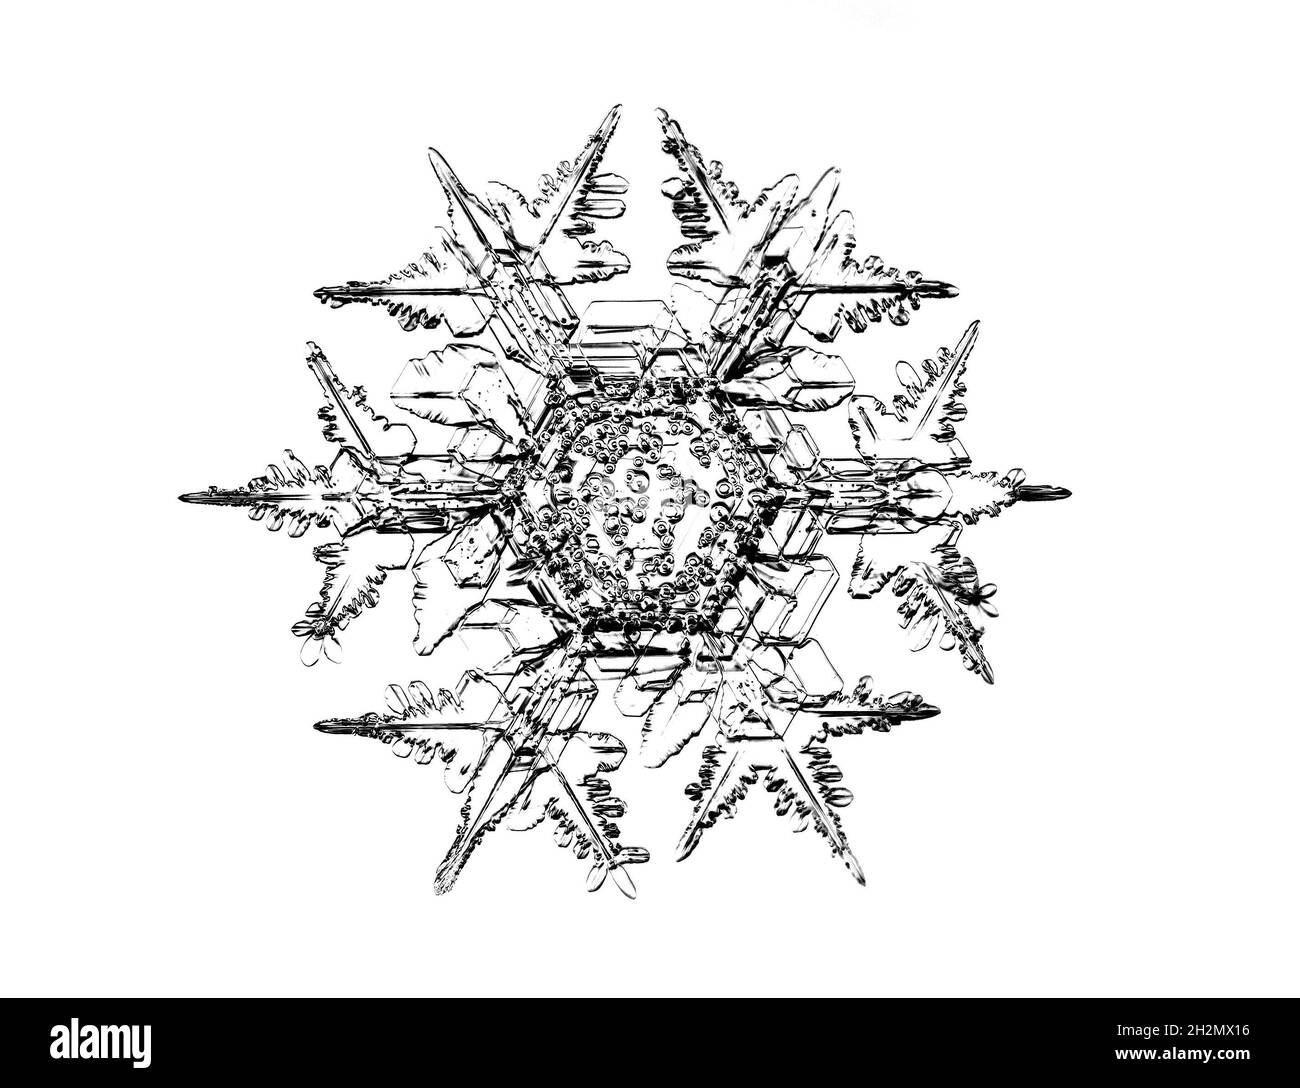 Copo de nieve negro aislado sobre fondo blanco. Ilustración basada en macro foto de cristal de nieve real: Elegante placa de estrella con brazos cortos y anchos Foto de stock